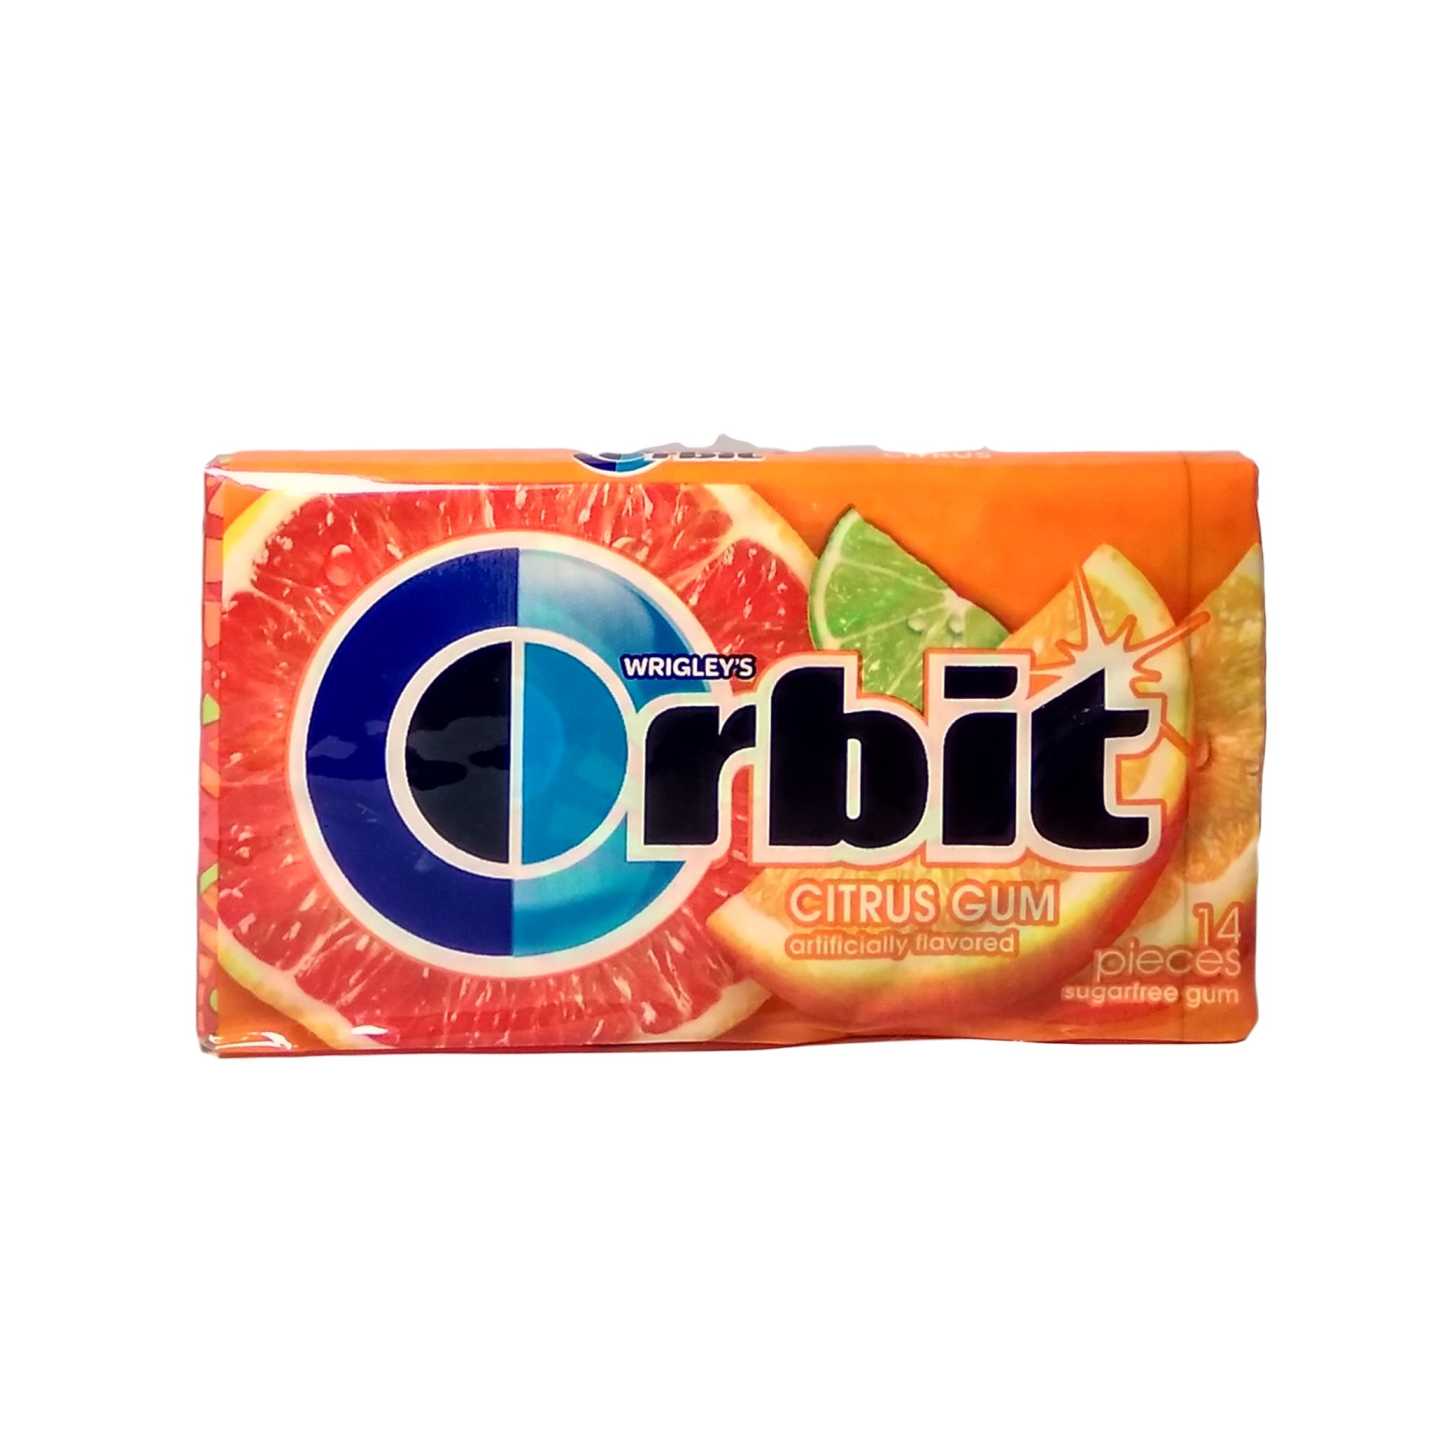 Orbit cirtus gum אורביט מסטיק פירות - טעימים